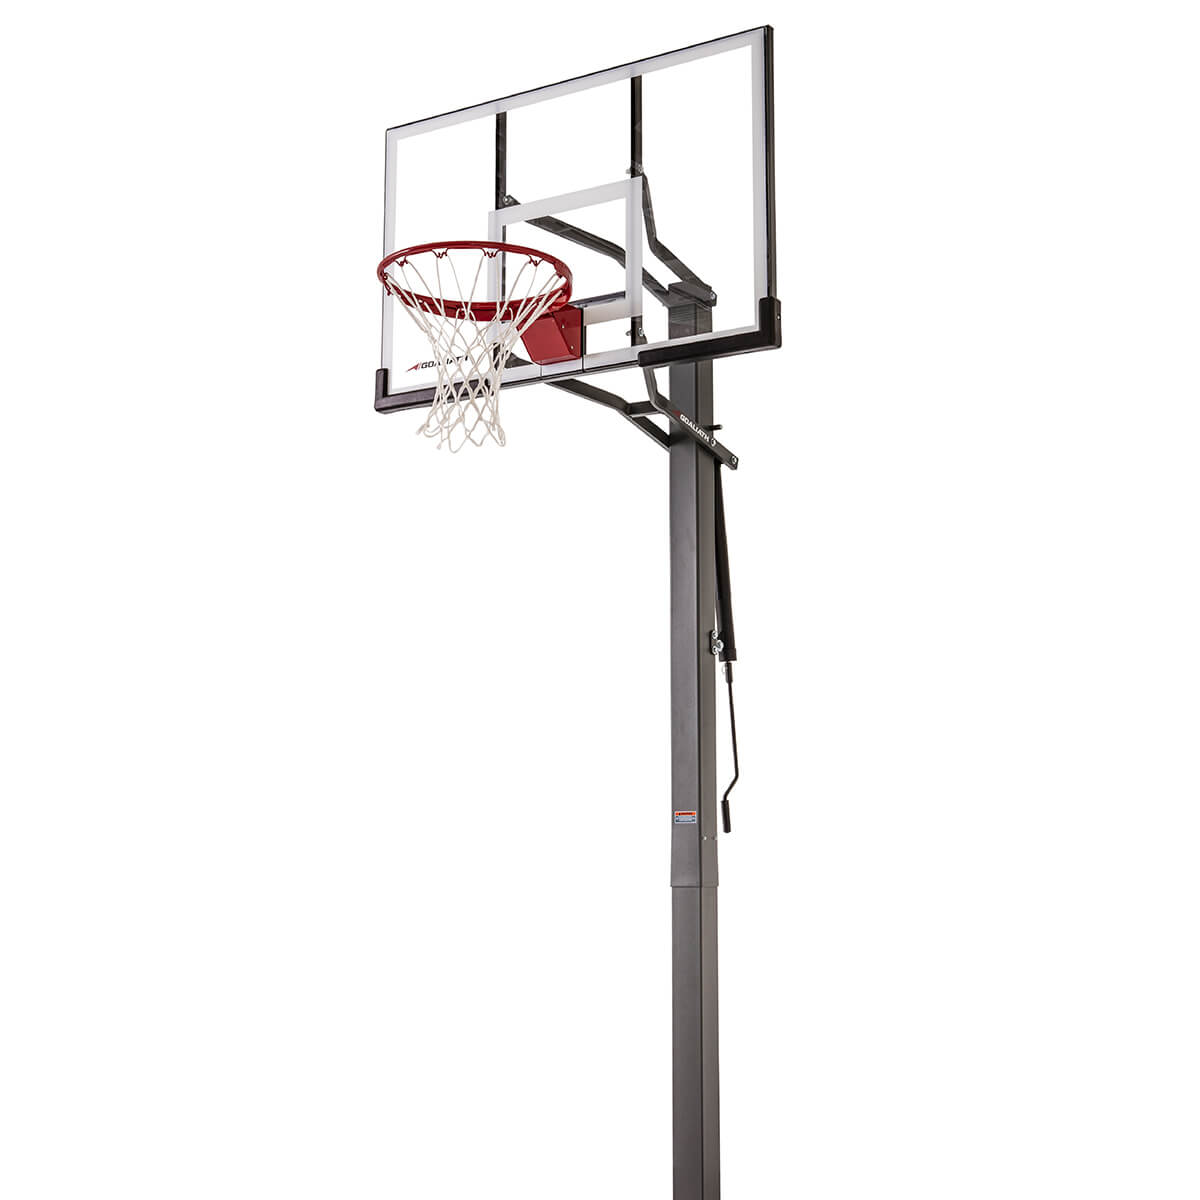 Goaliath GB50 InGround Basketballanlage kaufen online